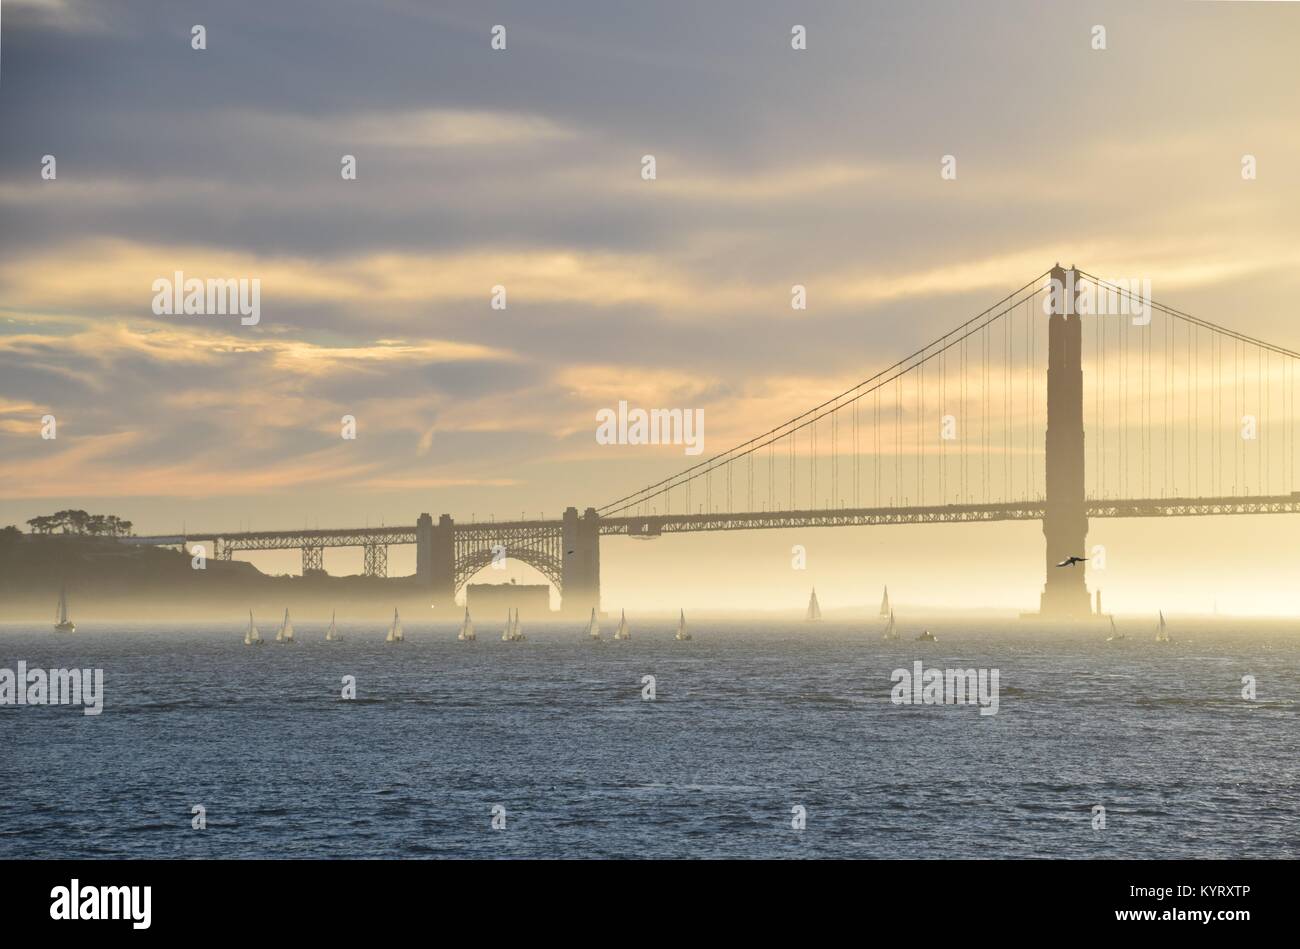 Una flotilla de pequeños barcos de vela al atardecer en el puente Golden Gate, San Francisco. Foto de stock